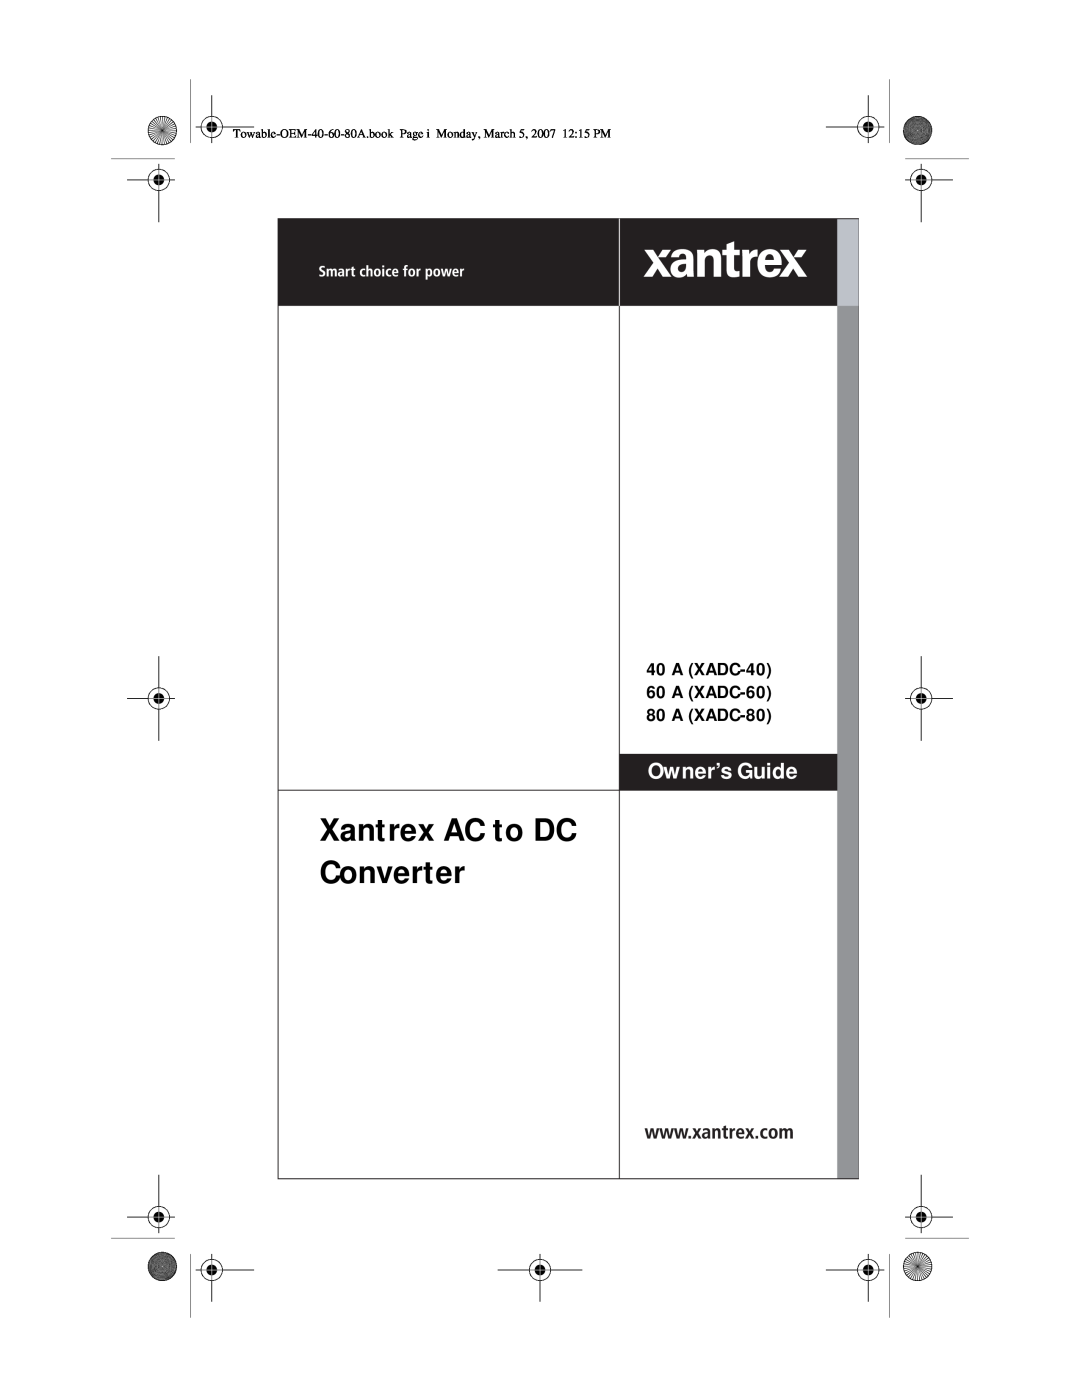 Xantrex Technology 60 A (XADC-60) manual Xantrex AC to DC Converter, A XADC-40 60 A XADC-60 80 A XADC-80, Owner’s Guide 